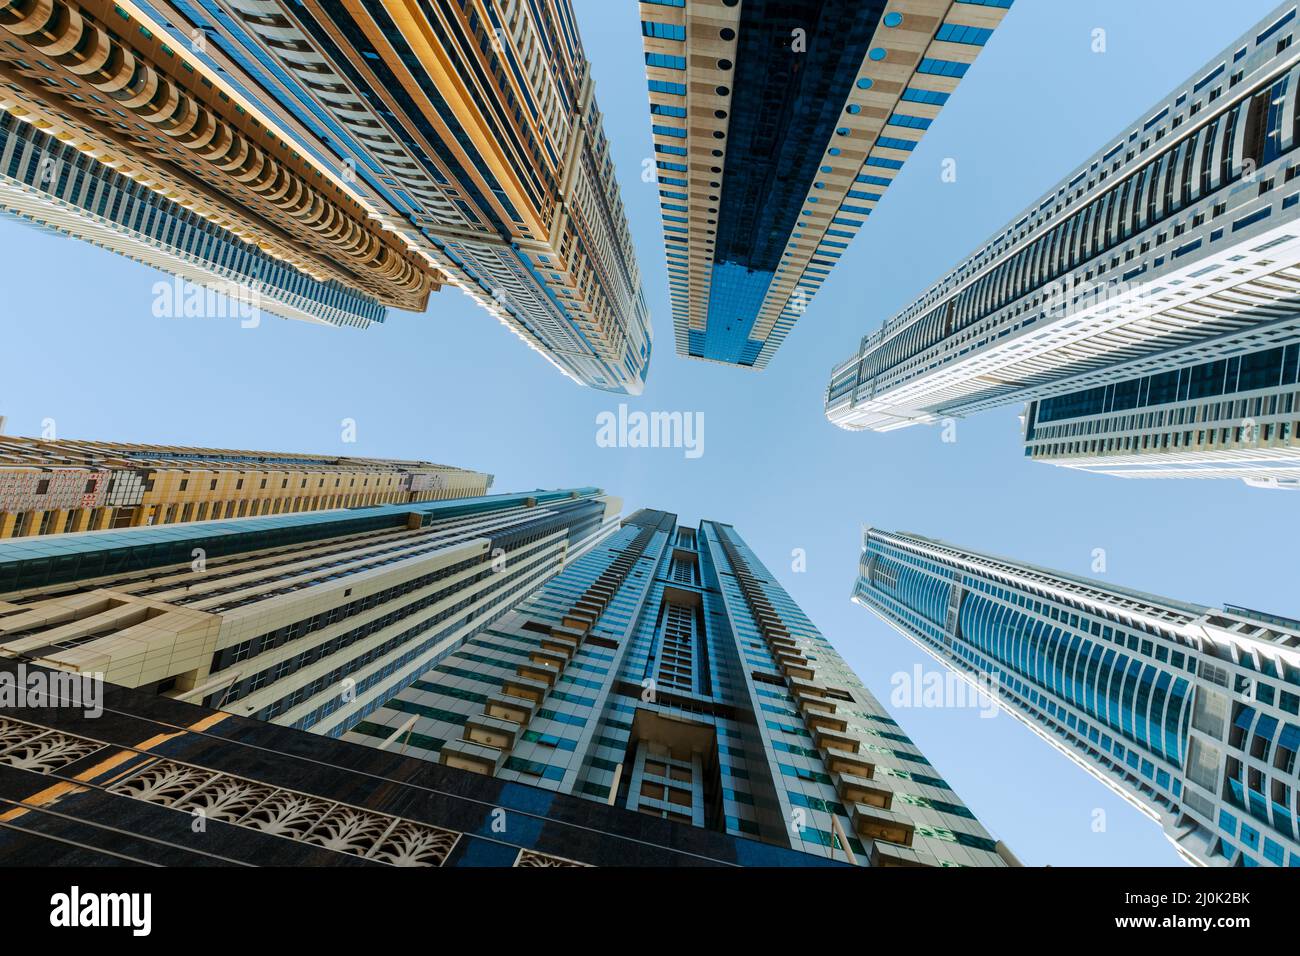 Moderne Luxus-Wolkenkratzer von Dubai Marina, Vereinigte Arabische Emirate. Naher Osten. Stockfoto